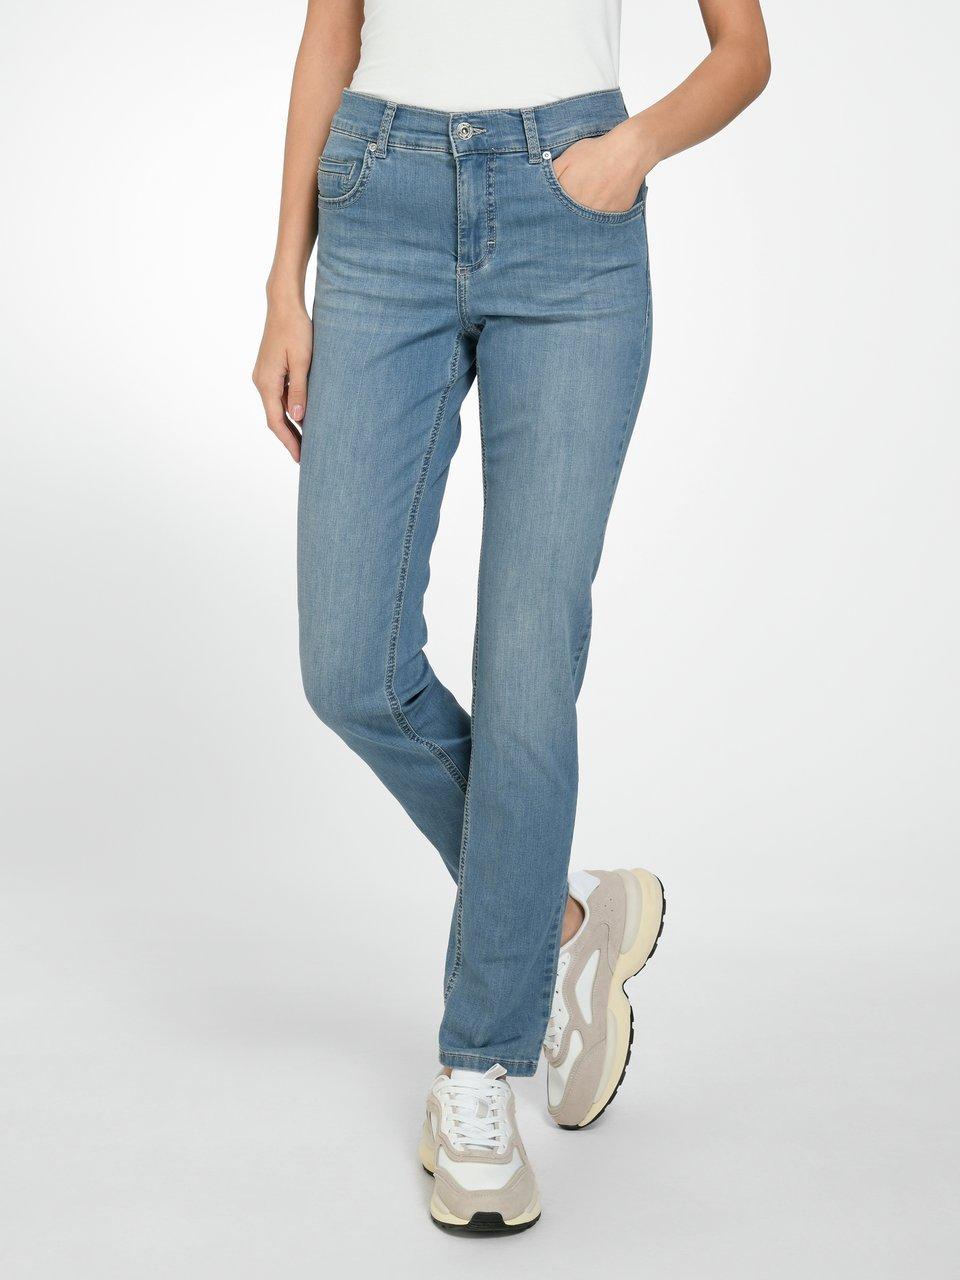 Cici ANGELS Blue Regular Modell denim Jeans - - Fit